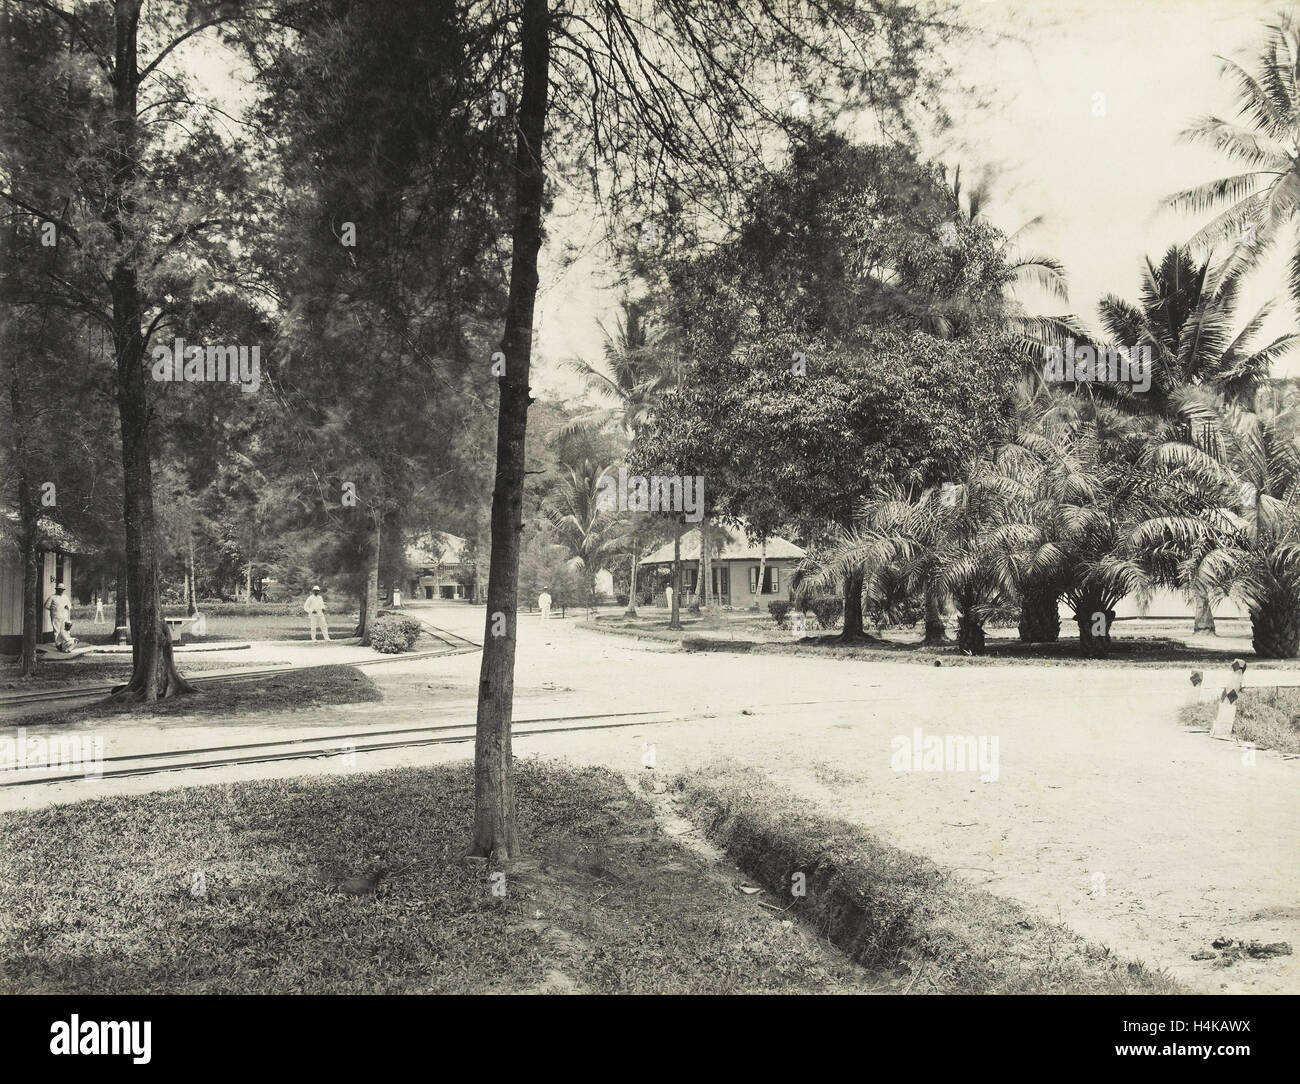 Avenida con árboles, casas y Europeos en Indonesia, Carl J. Kleingrothe, 1890 - 1900 Foto de stock